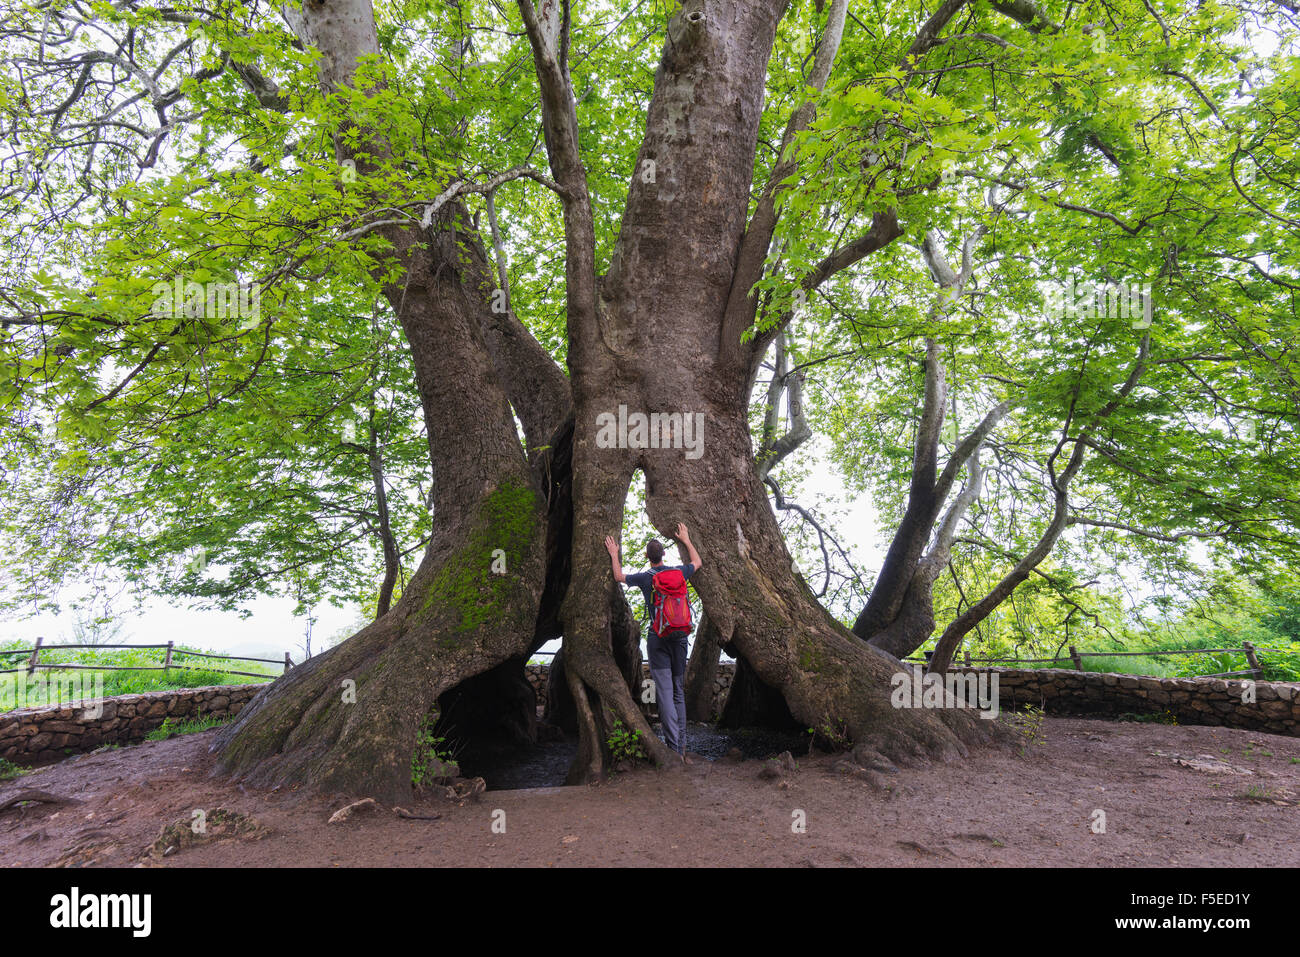 Un arbre de 2000 ans Platan, indépendante de l'enclave arménienne du Haut-Karabakh officiellement au sein de l'Azerbaïdjan, Arménie, Caucase, Banque D'Images